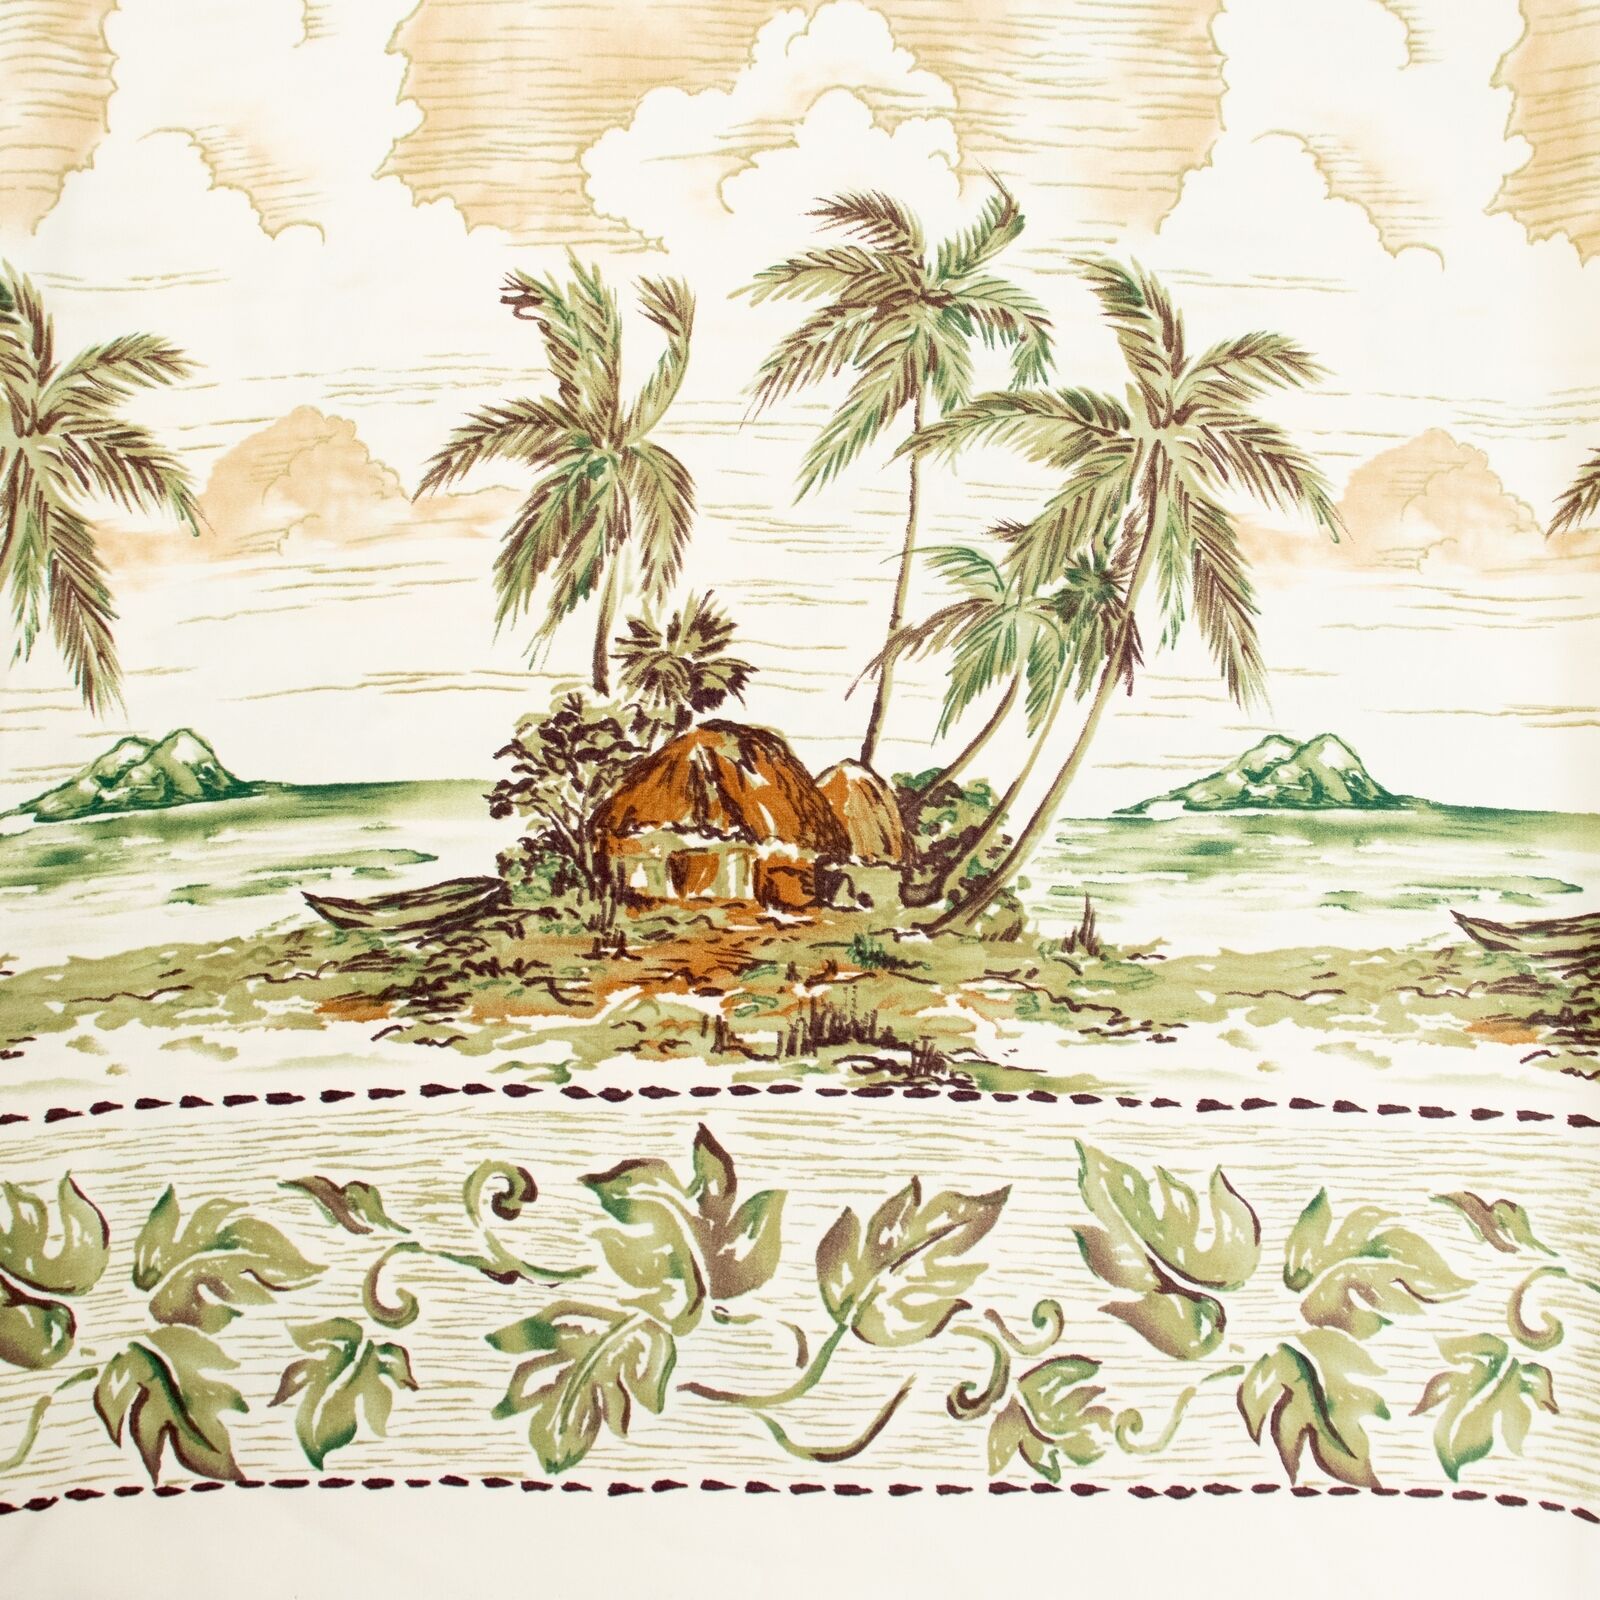 Hawaiian Fabric Yardage 4 Yards Border Print Shirting Dressmaking Huts Palms